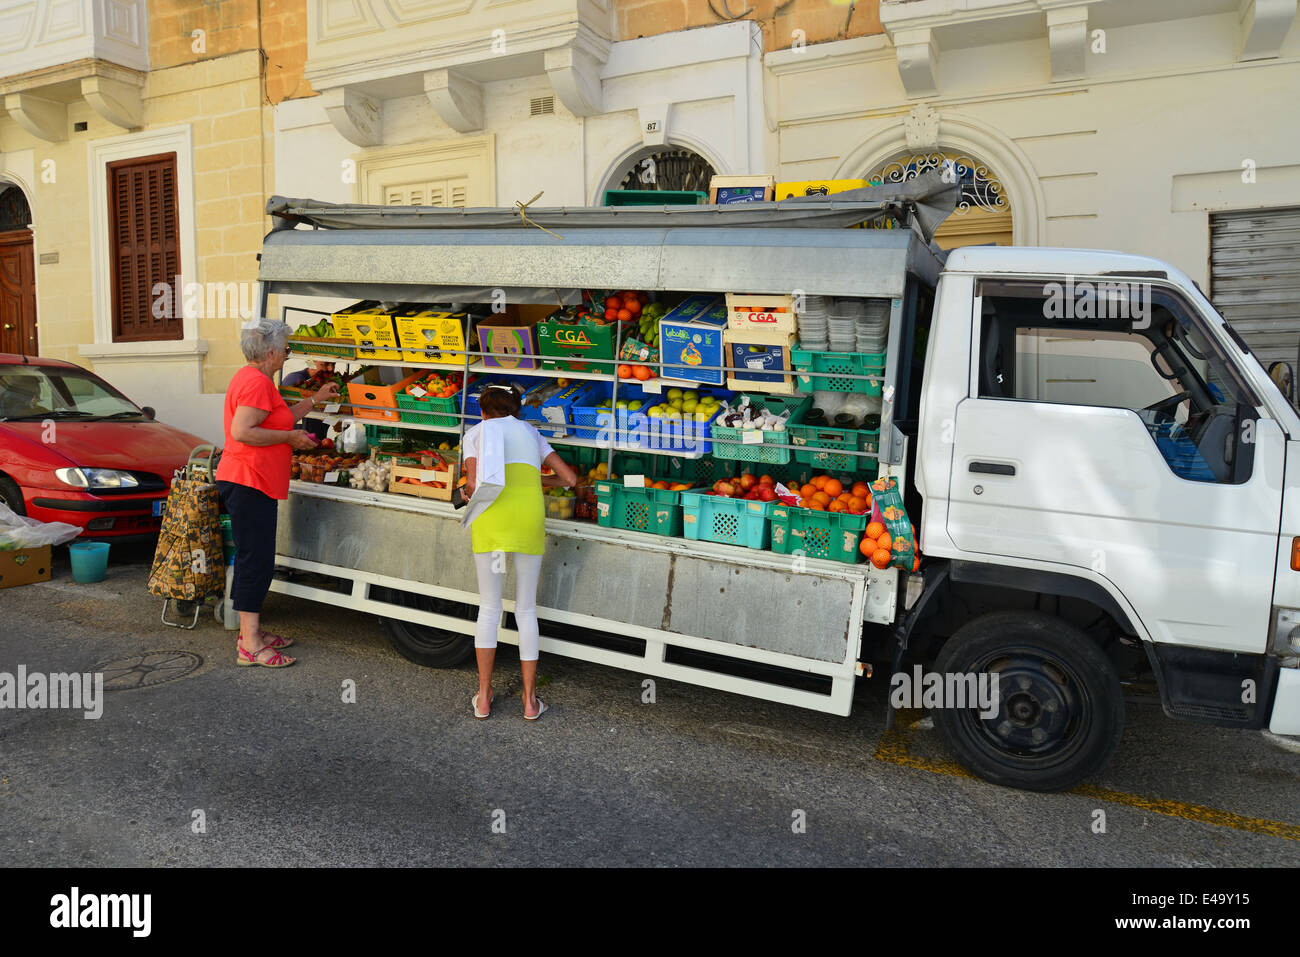 Frutta & Verdura van consegna in Street, Sliema (Tas-Sliema), nord del quartiere portuale, Malta Xlokk Regione, Repubblica di Malta Foto Stock